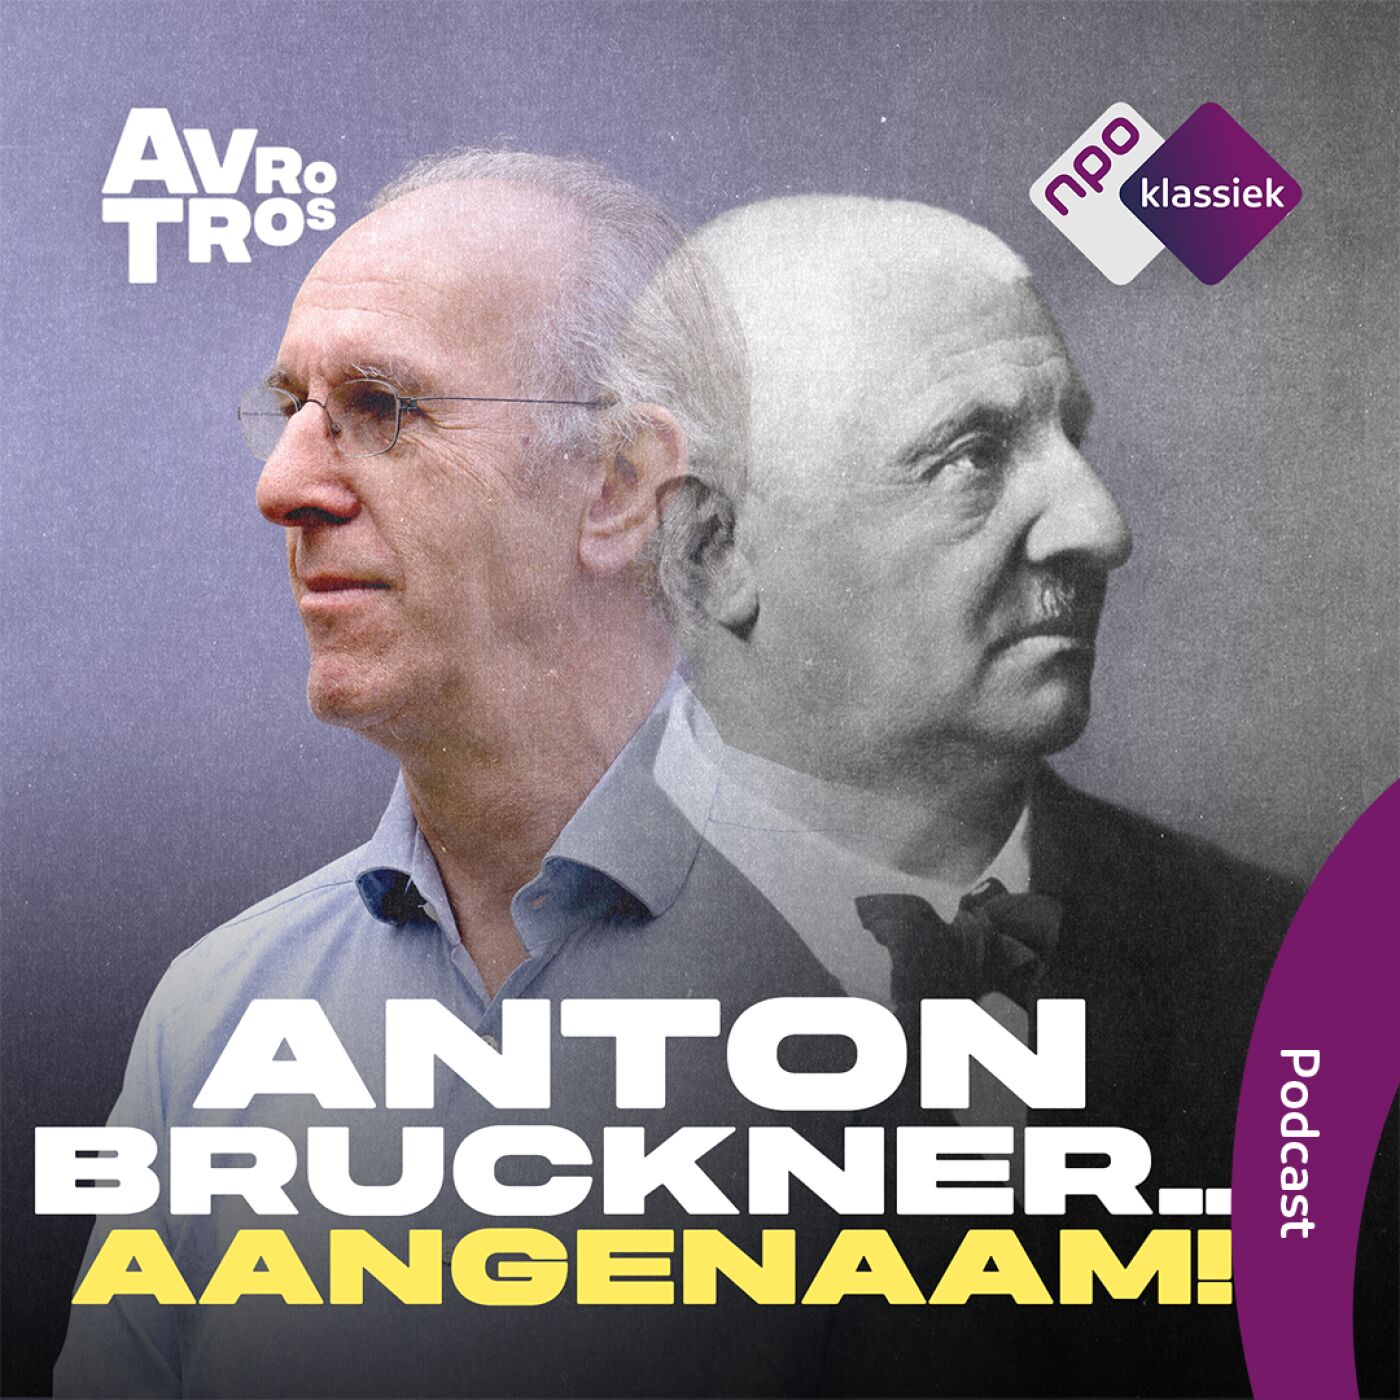 #1 - Anton Bruckner, laatbloeier van beroep - 1. Kind achter het orgel (S05)